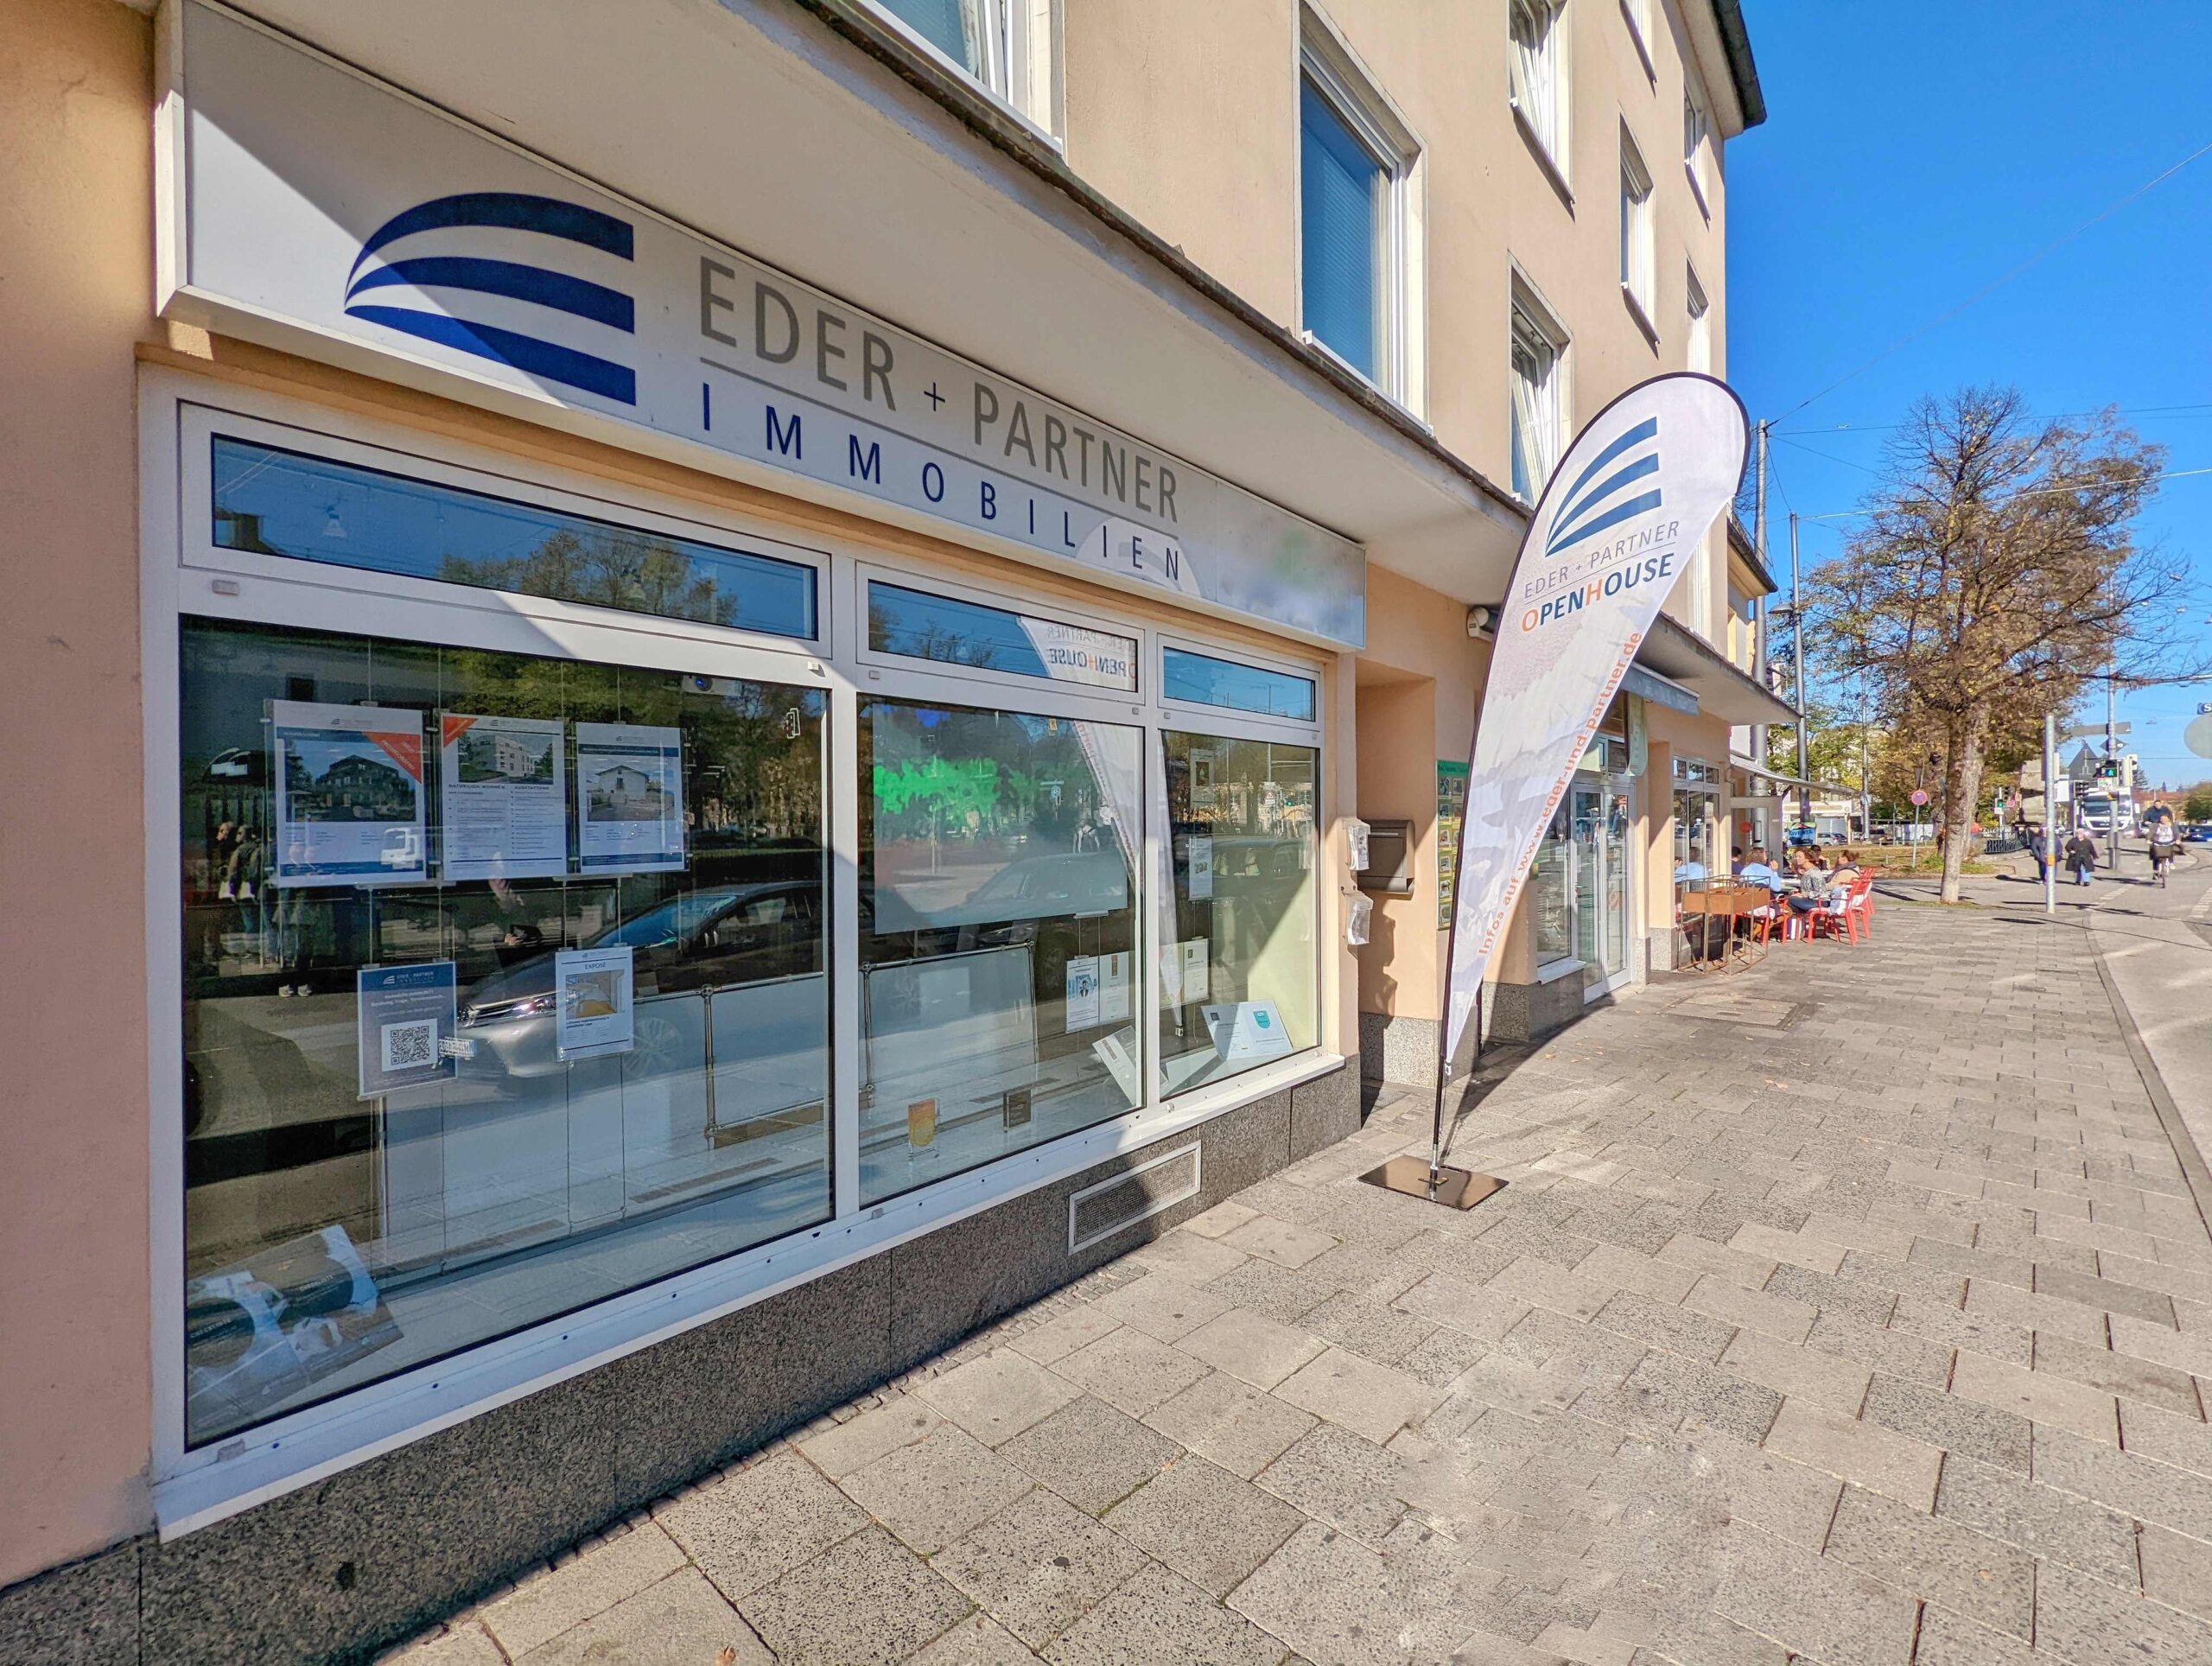 Eder + Partner Immobilien Shop